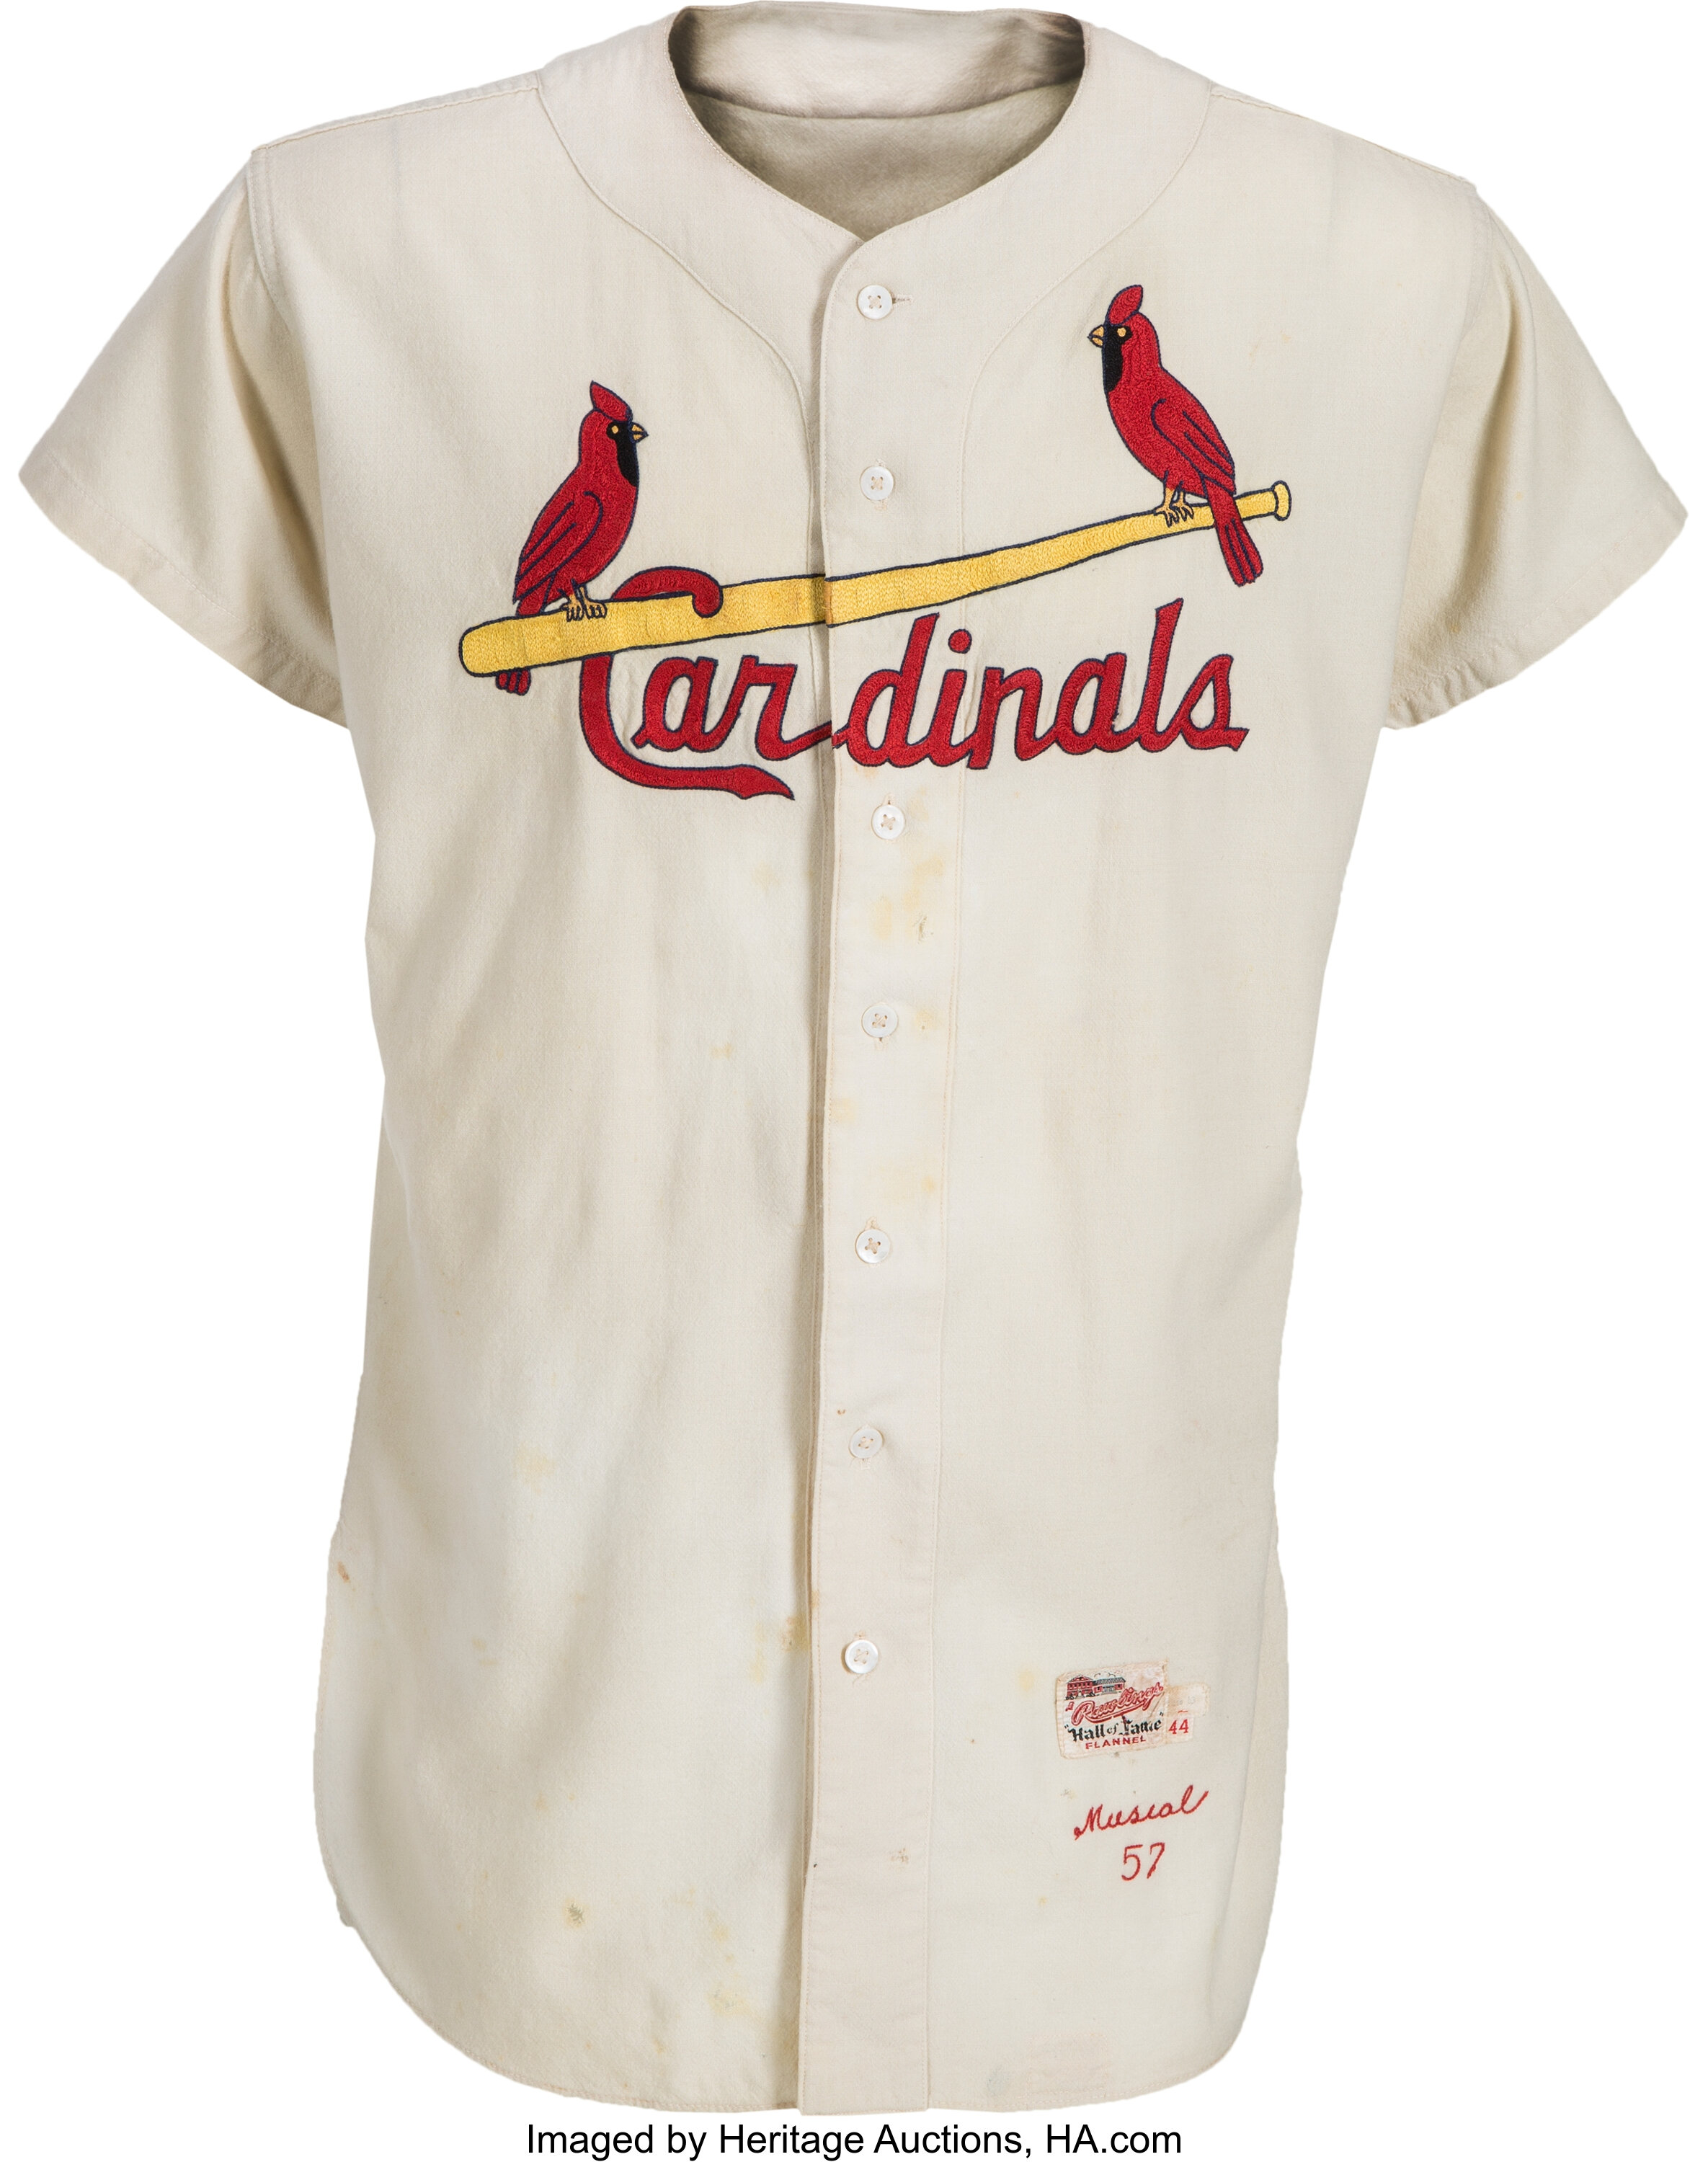 St. Louis Cardinals Vintage Sports Memorabilia (1957-1975)